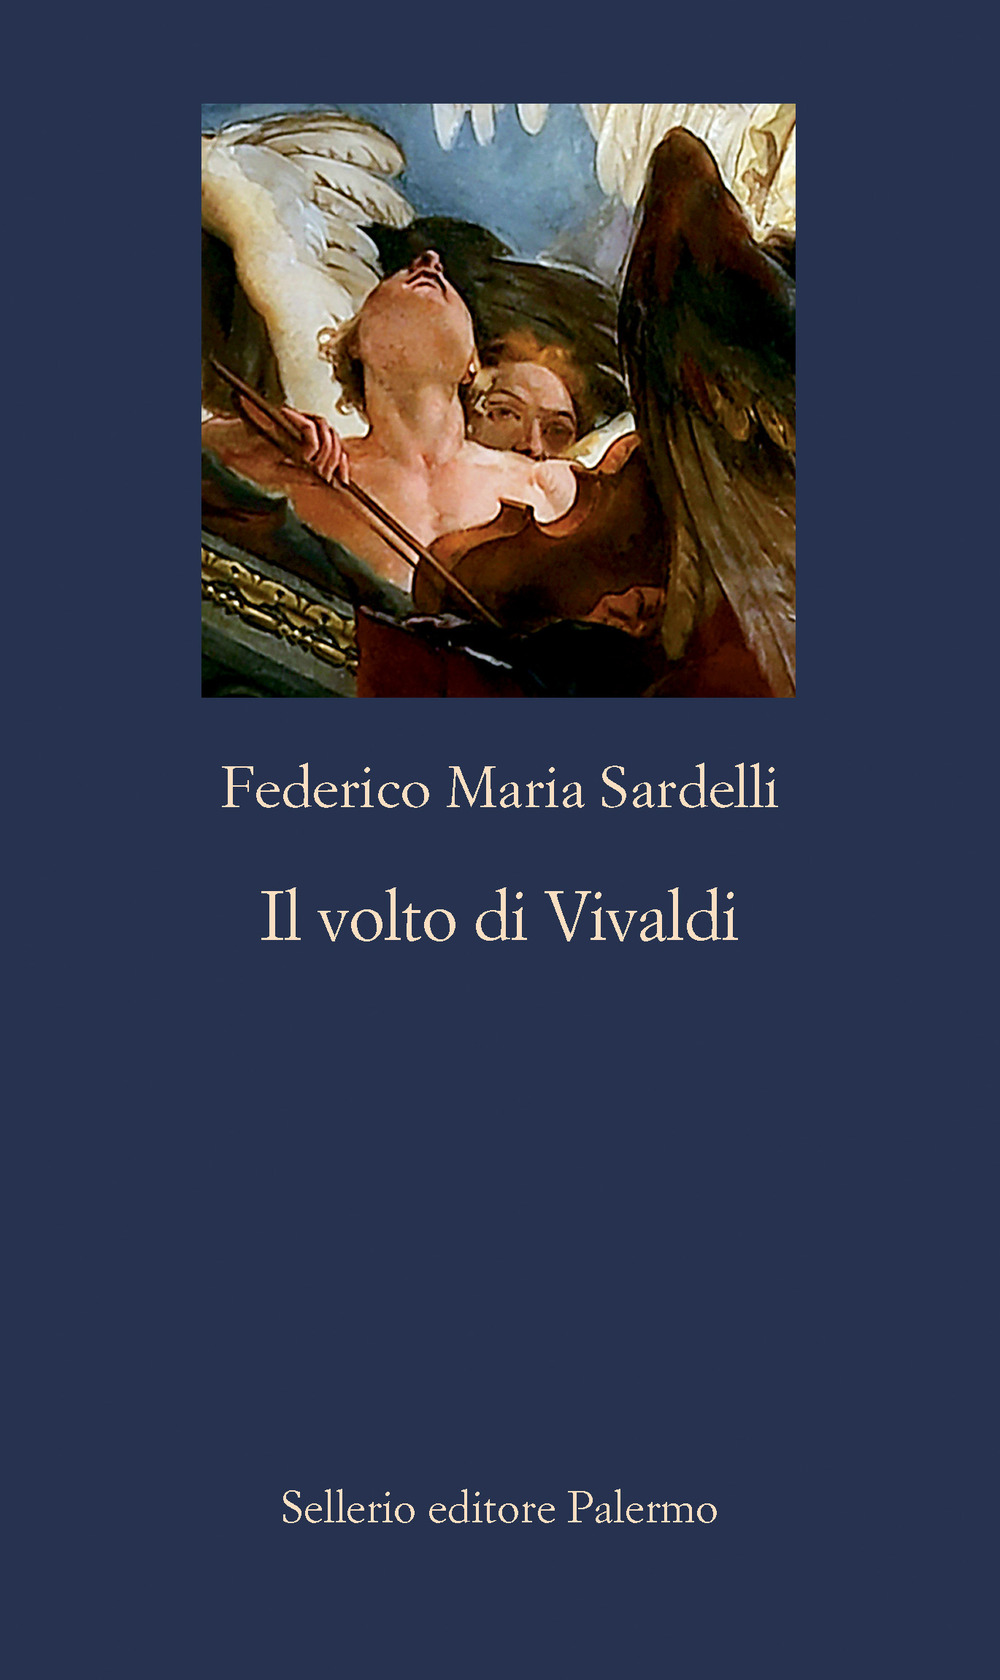 Libri Federico Maria Sardelli - Il Volto Di Vivaldi NUOVO SIGILLATO, EDIZIONE DEL 25/11/2021 SUBITO DISPONIBILE